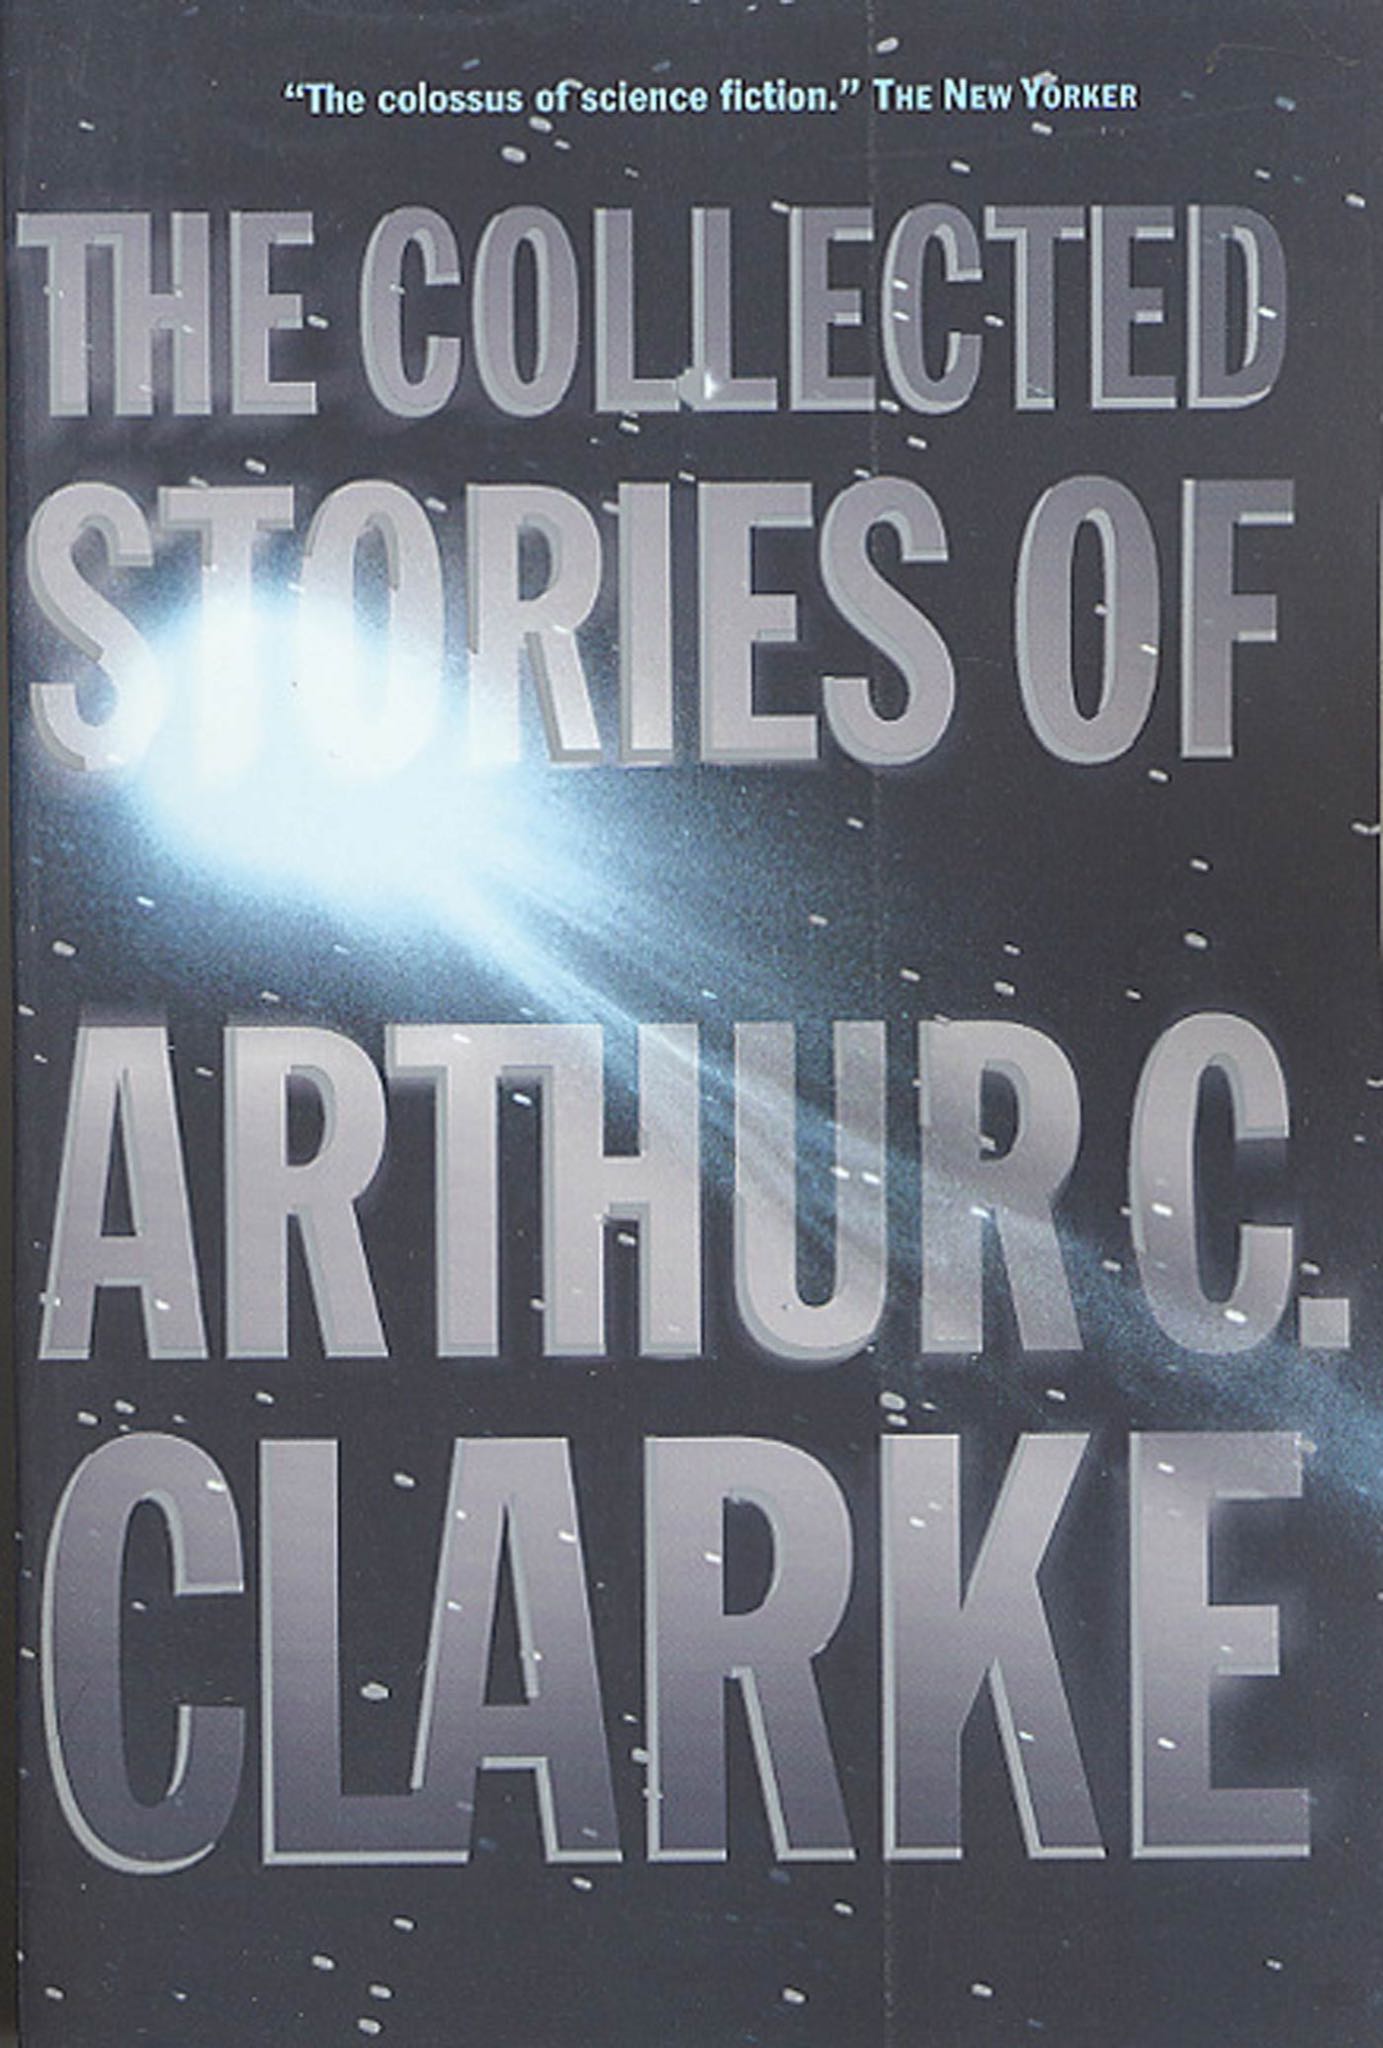 2001 by Arthur C. Clarke